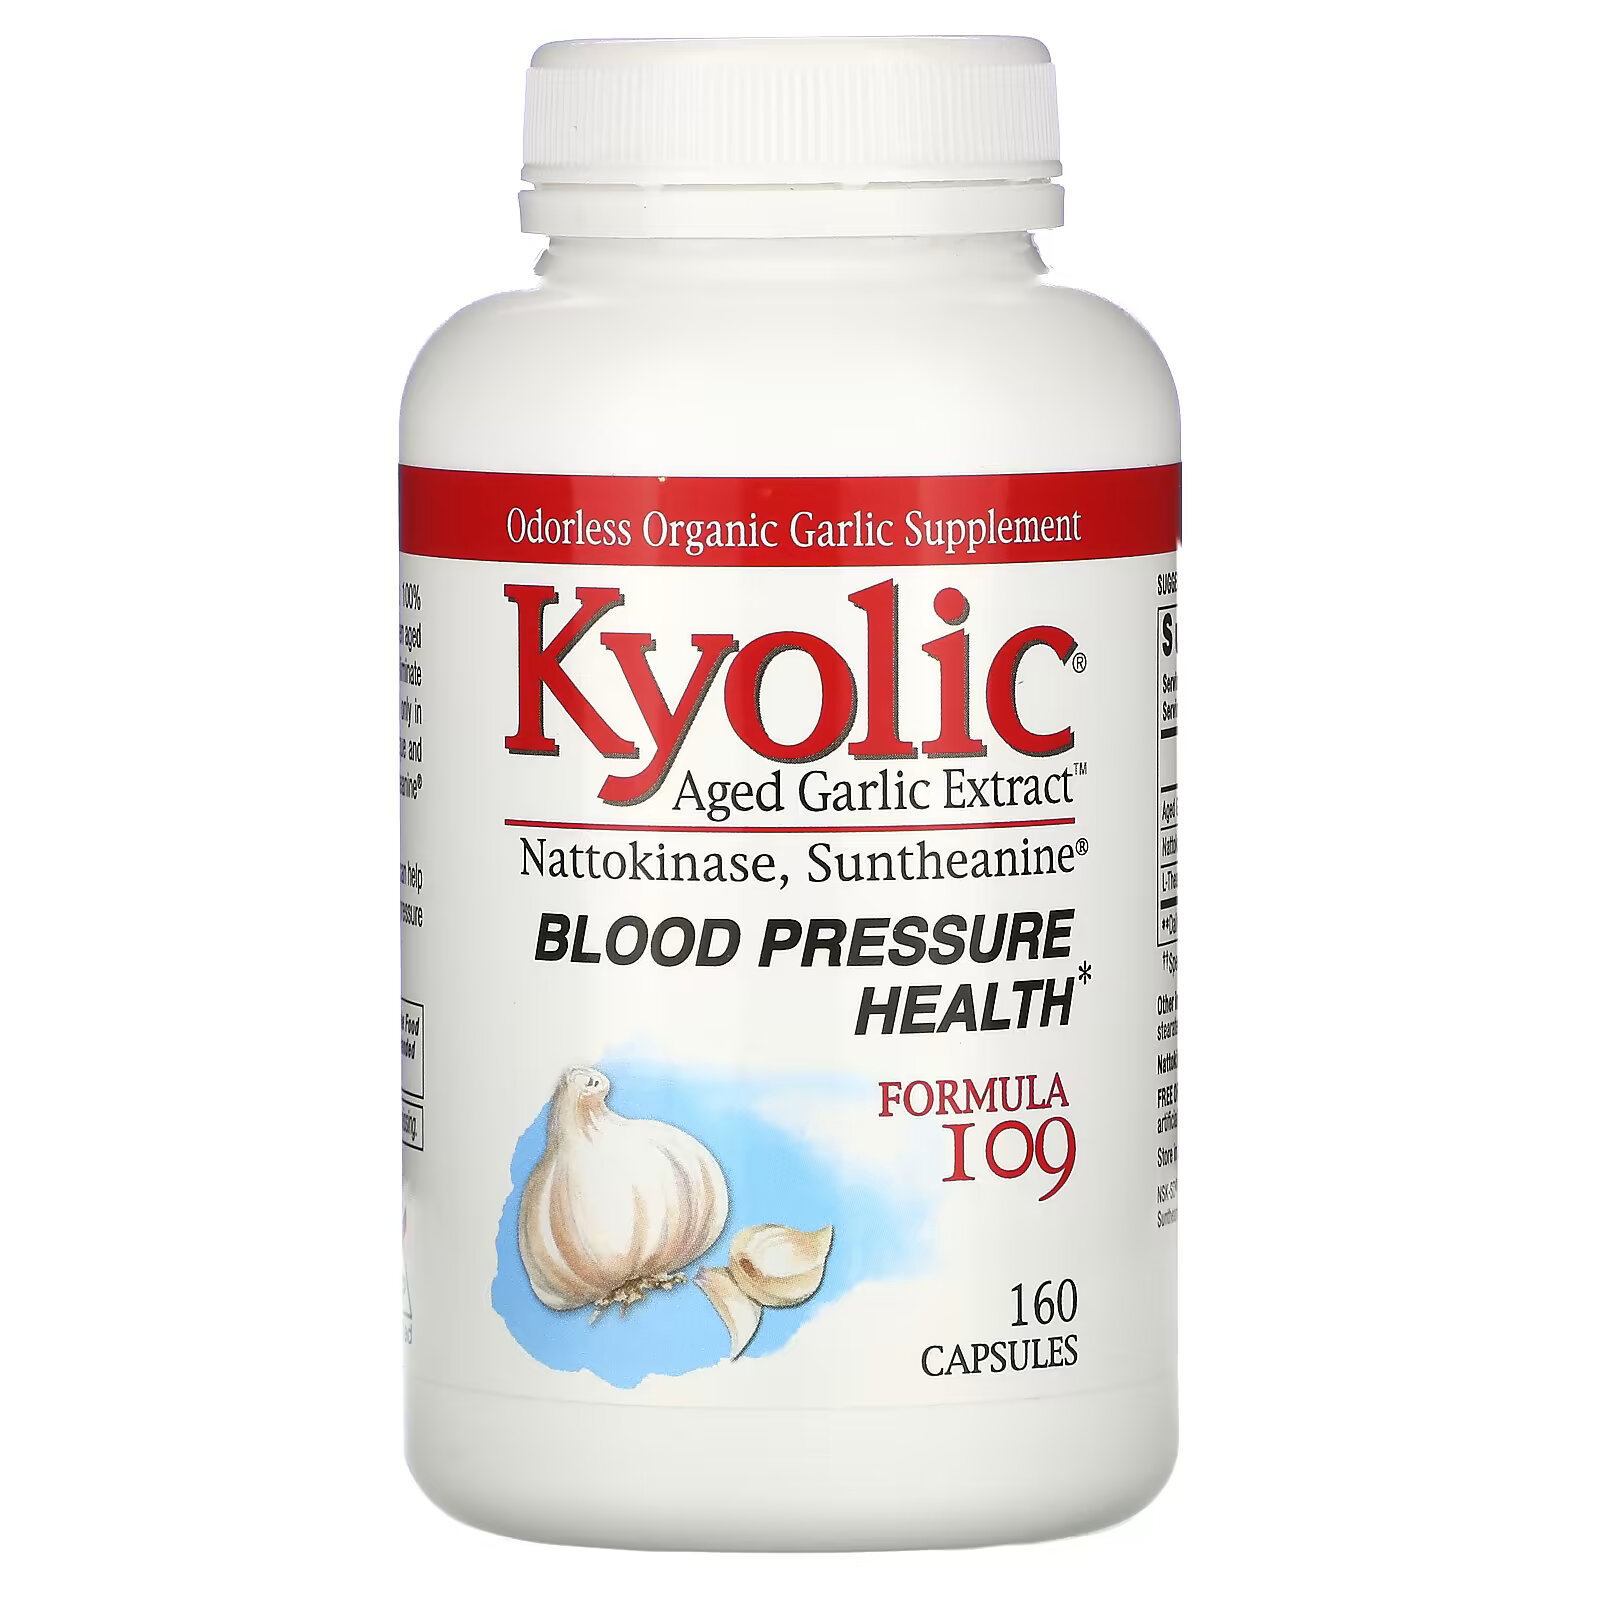 Kyolic, Aged Garlic Extract, экстракт выдержанного чеснока, для здорового артериального давления, формула 109, 160 капсул kyolic aged garlic extract экстракт выдержанного чеснока для здорового артериального давления формула 109 160 капсул